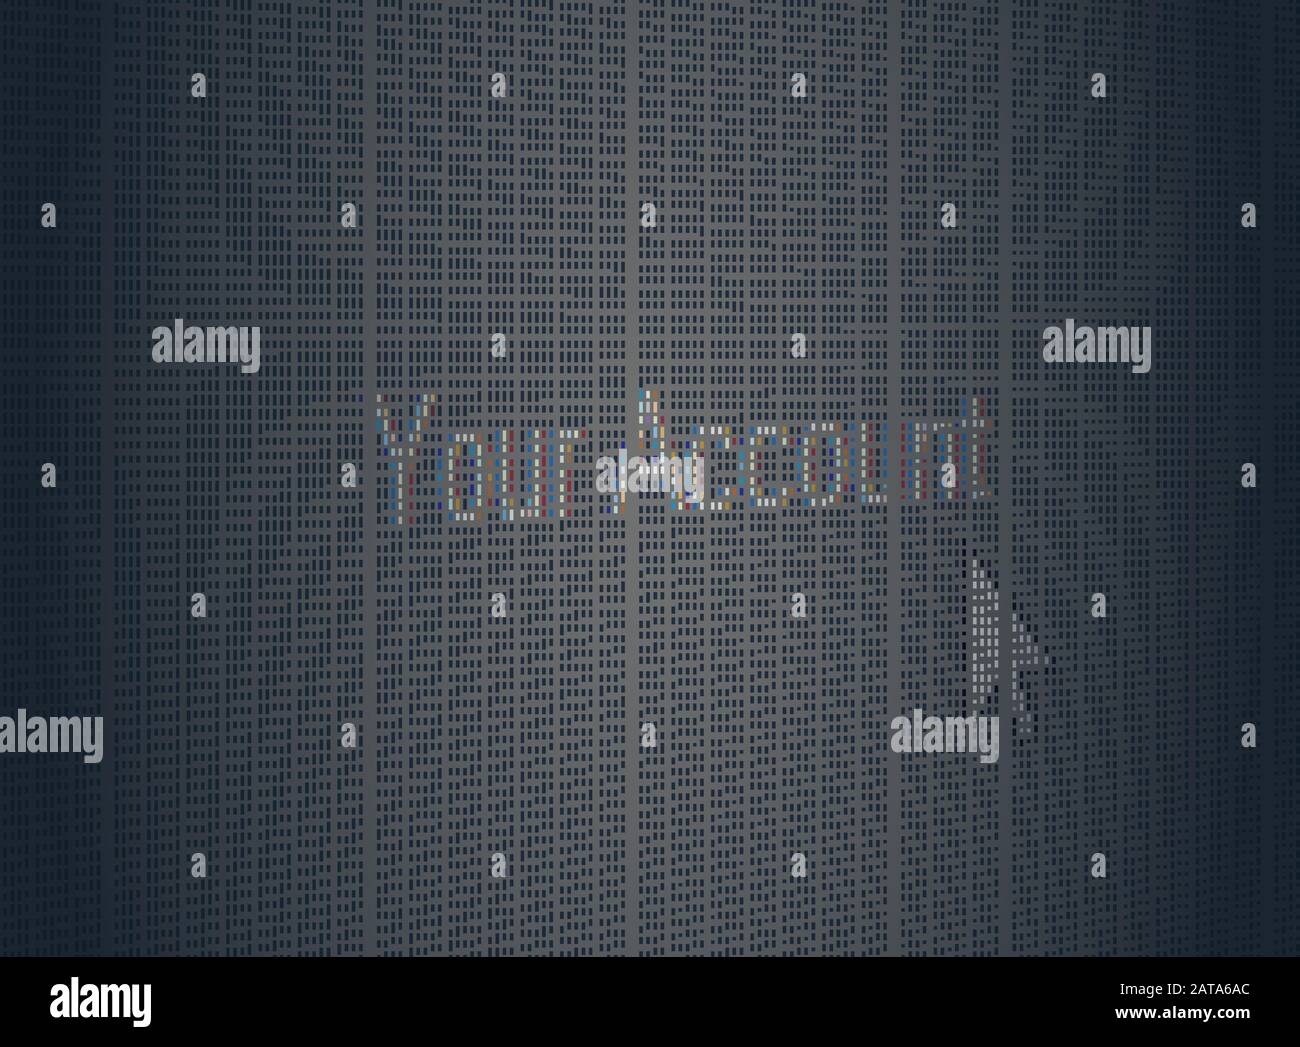 Closeup Arrow Cursor-Zeigeposition Site-Menü Item Your Account Words on Computer LCD Screen Pixel Background - Vector Macro Image Digital Concept Stock Vektor